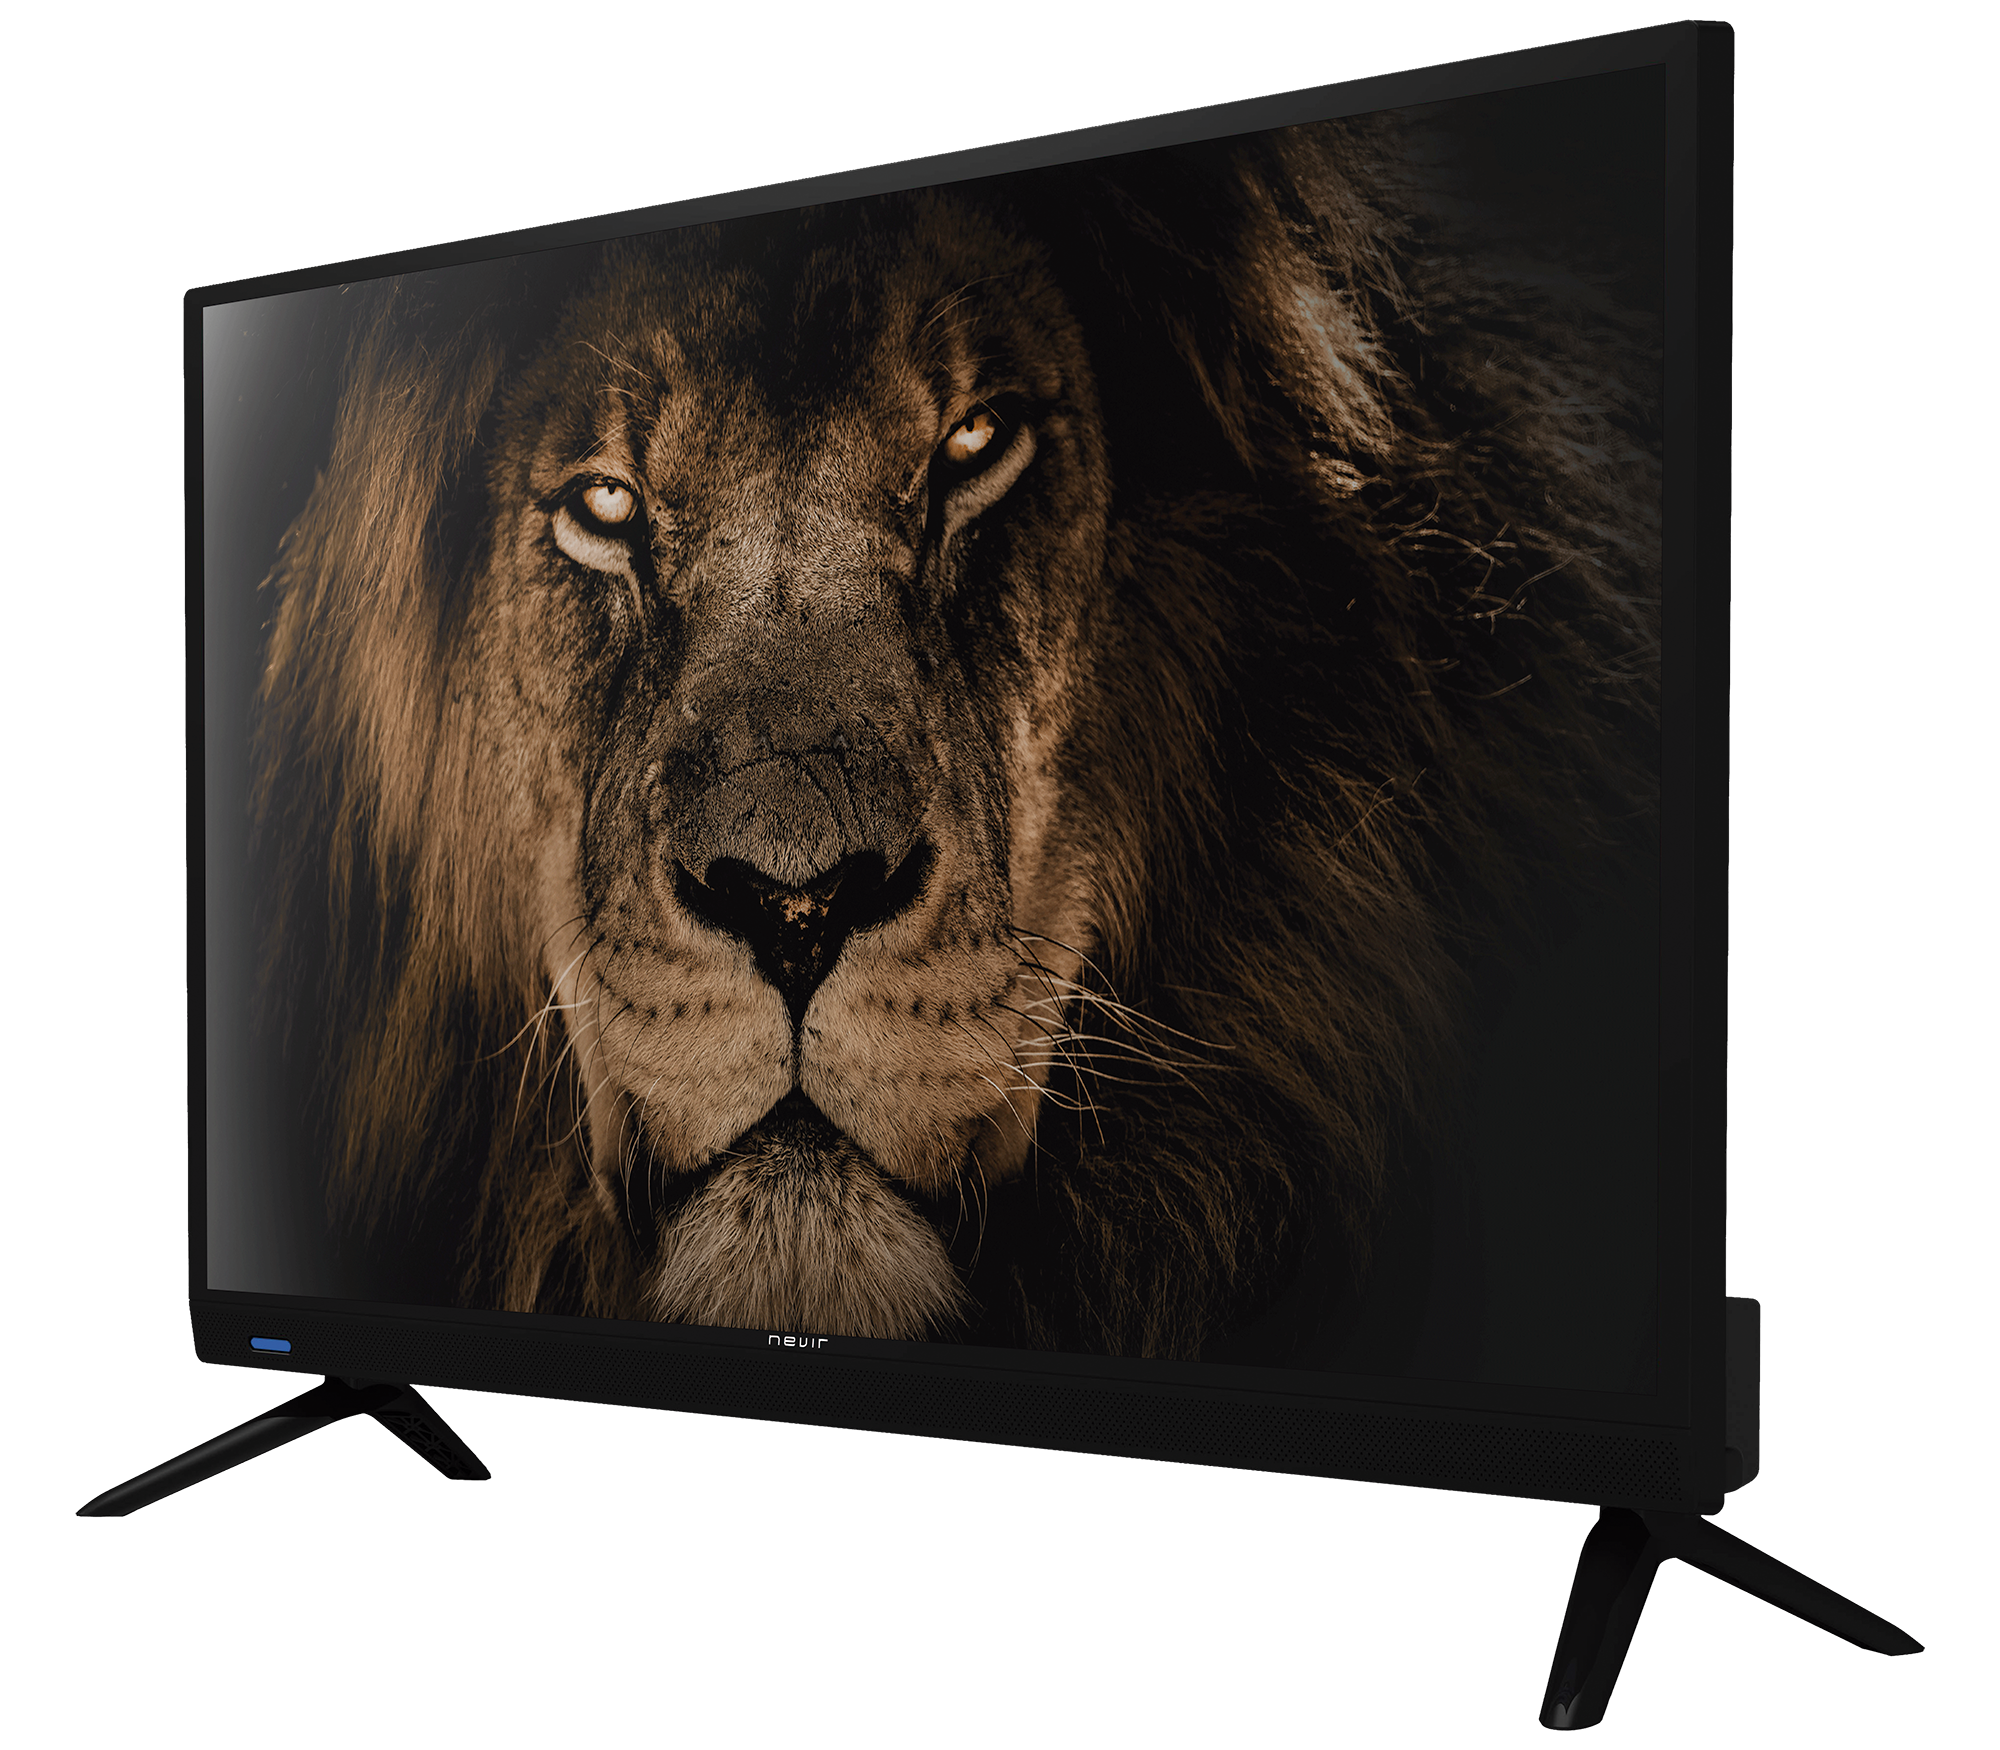 Televisor Nevir 7902 con pantalla LED UHD 4K de 50 pulgadas color Negro